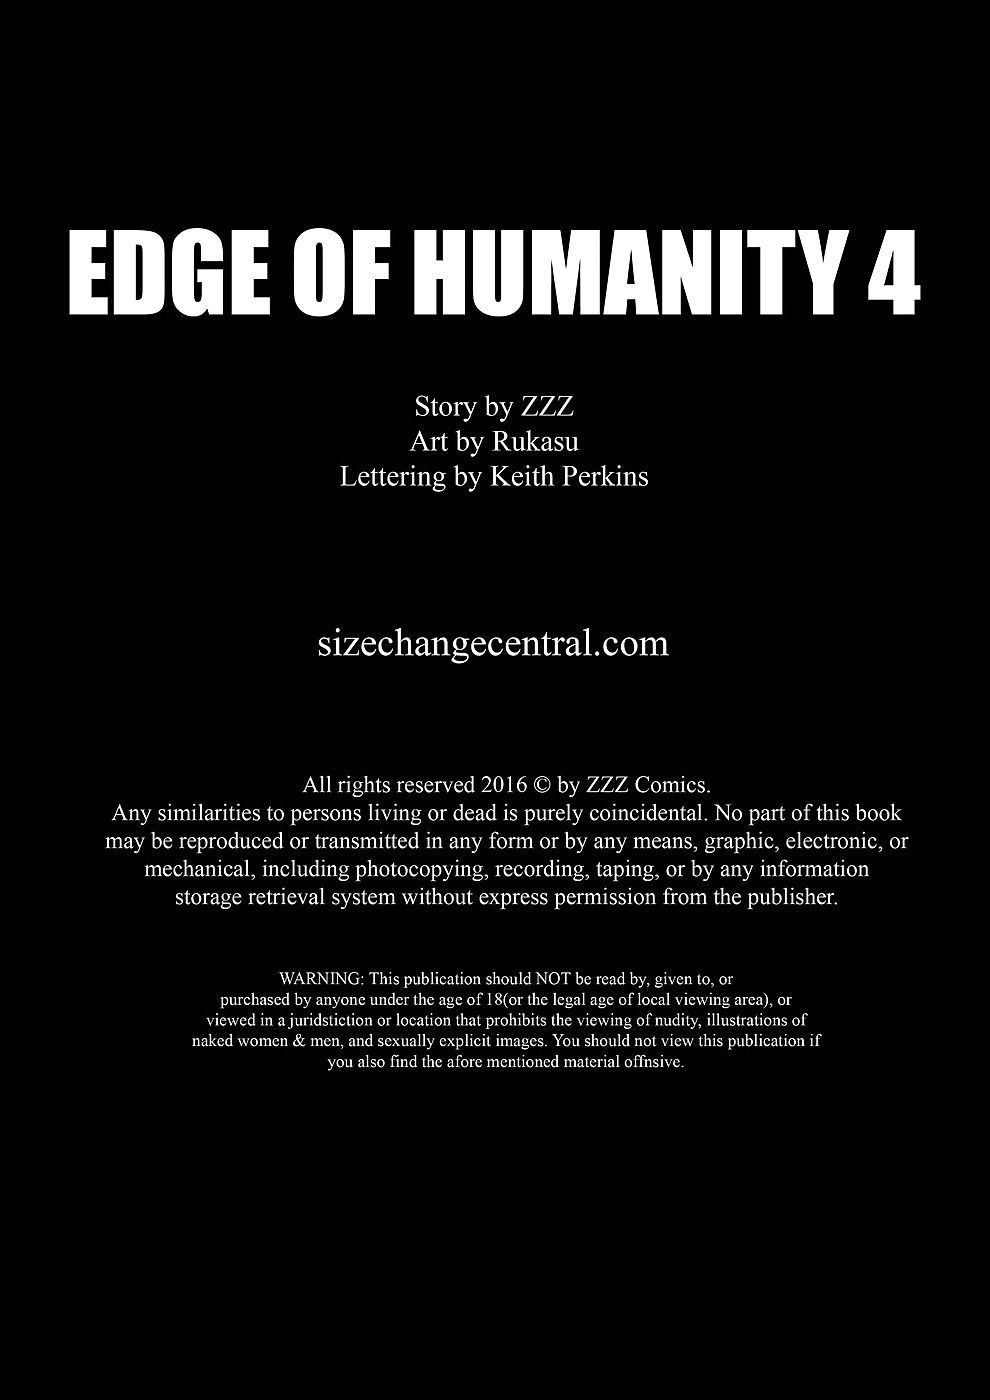 zzz bordo di l'umanità 4 page 1